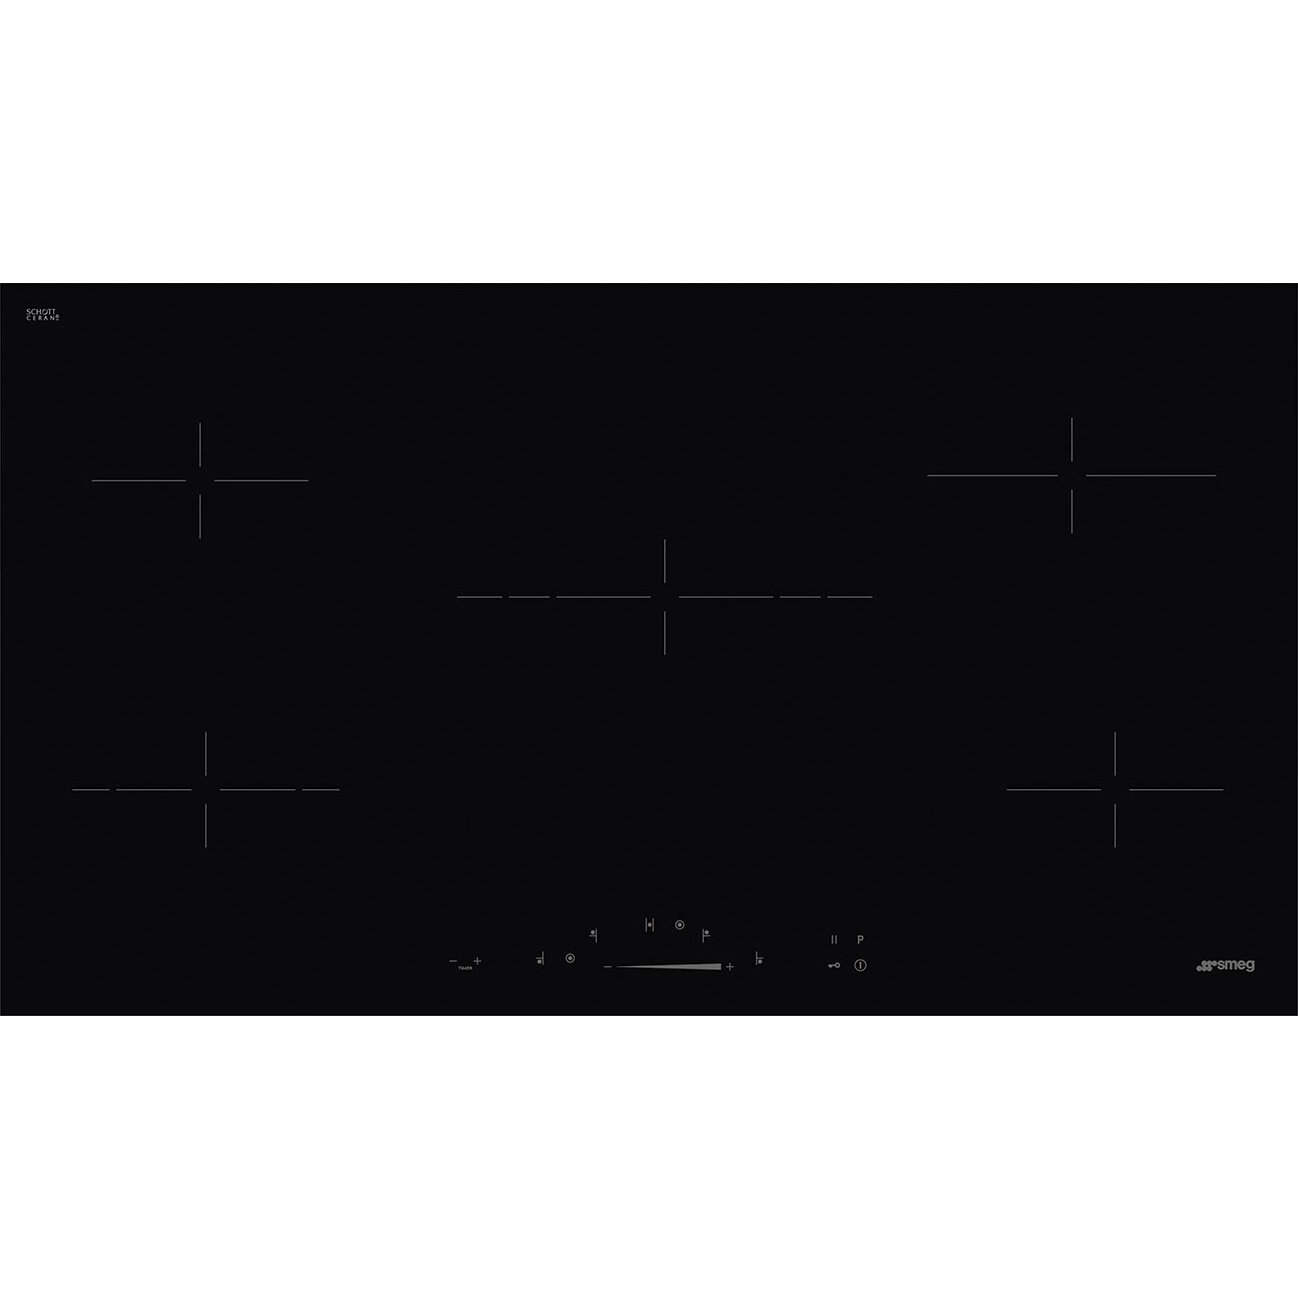 Smeg Встраиваемая варочная панель SMEG/ Индукция, 90 см, ультранизкий профиль, Compact Slider, 5 зон, черный цвет